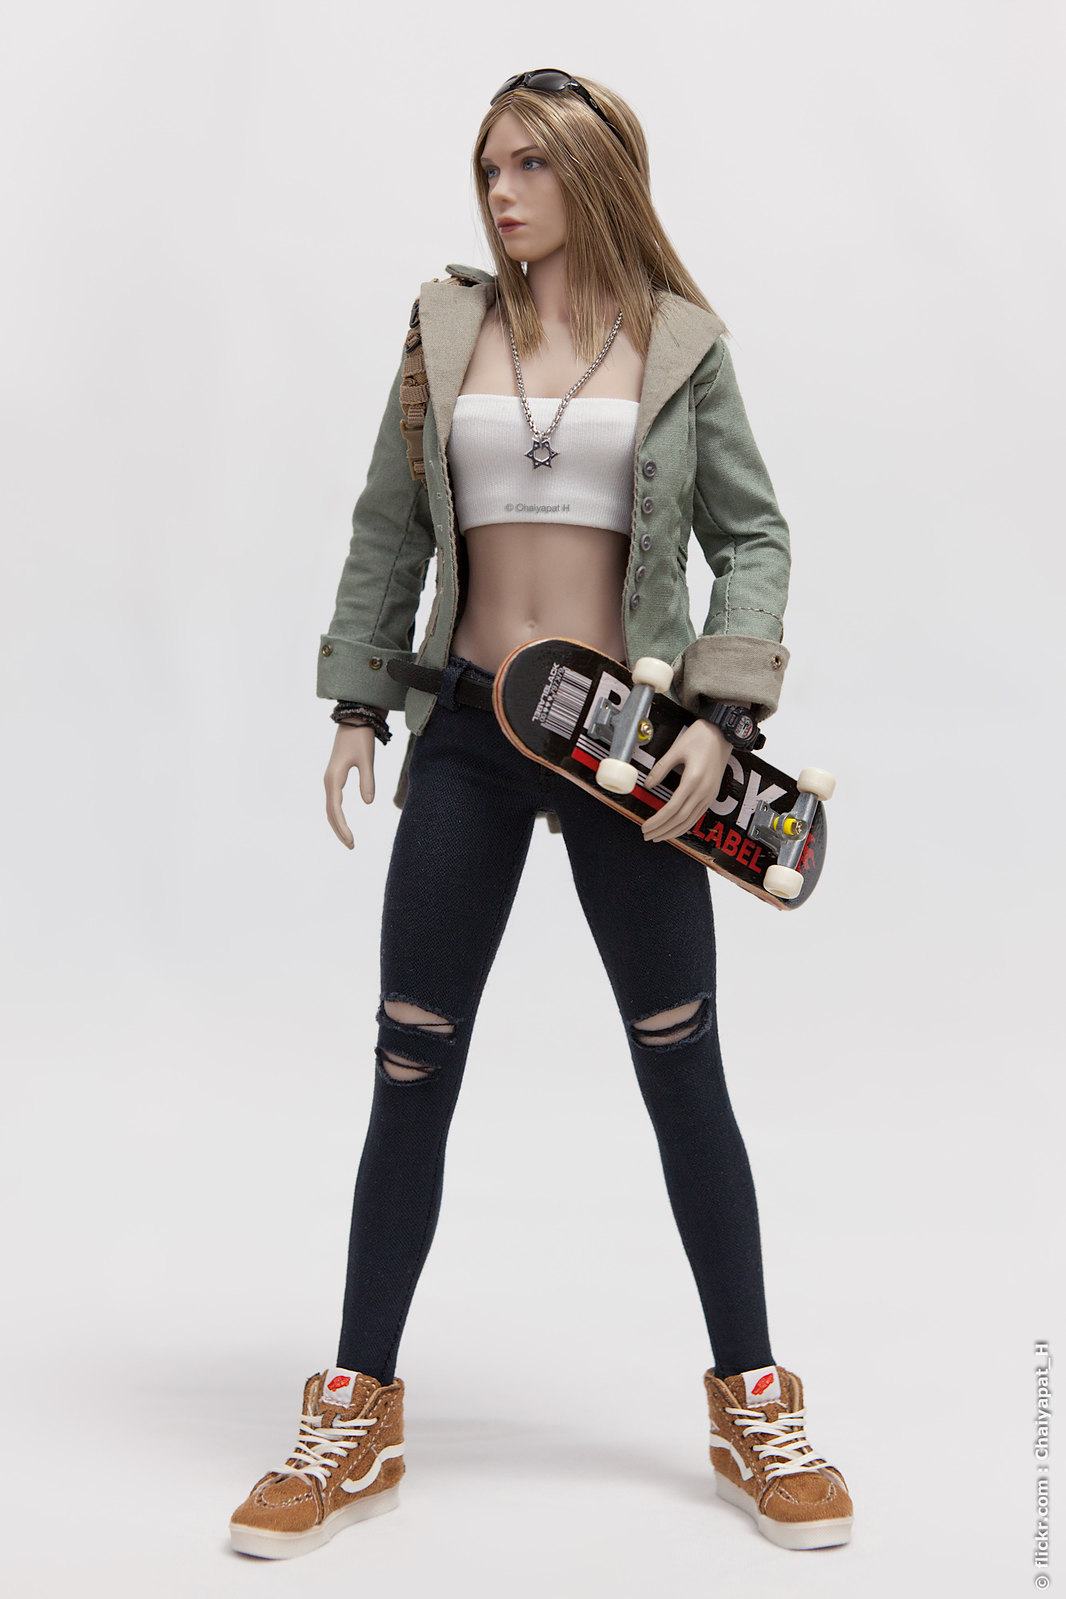 skater - Skater Girl 41775305602_a9c84c7459_h